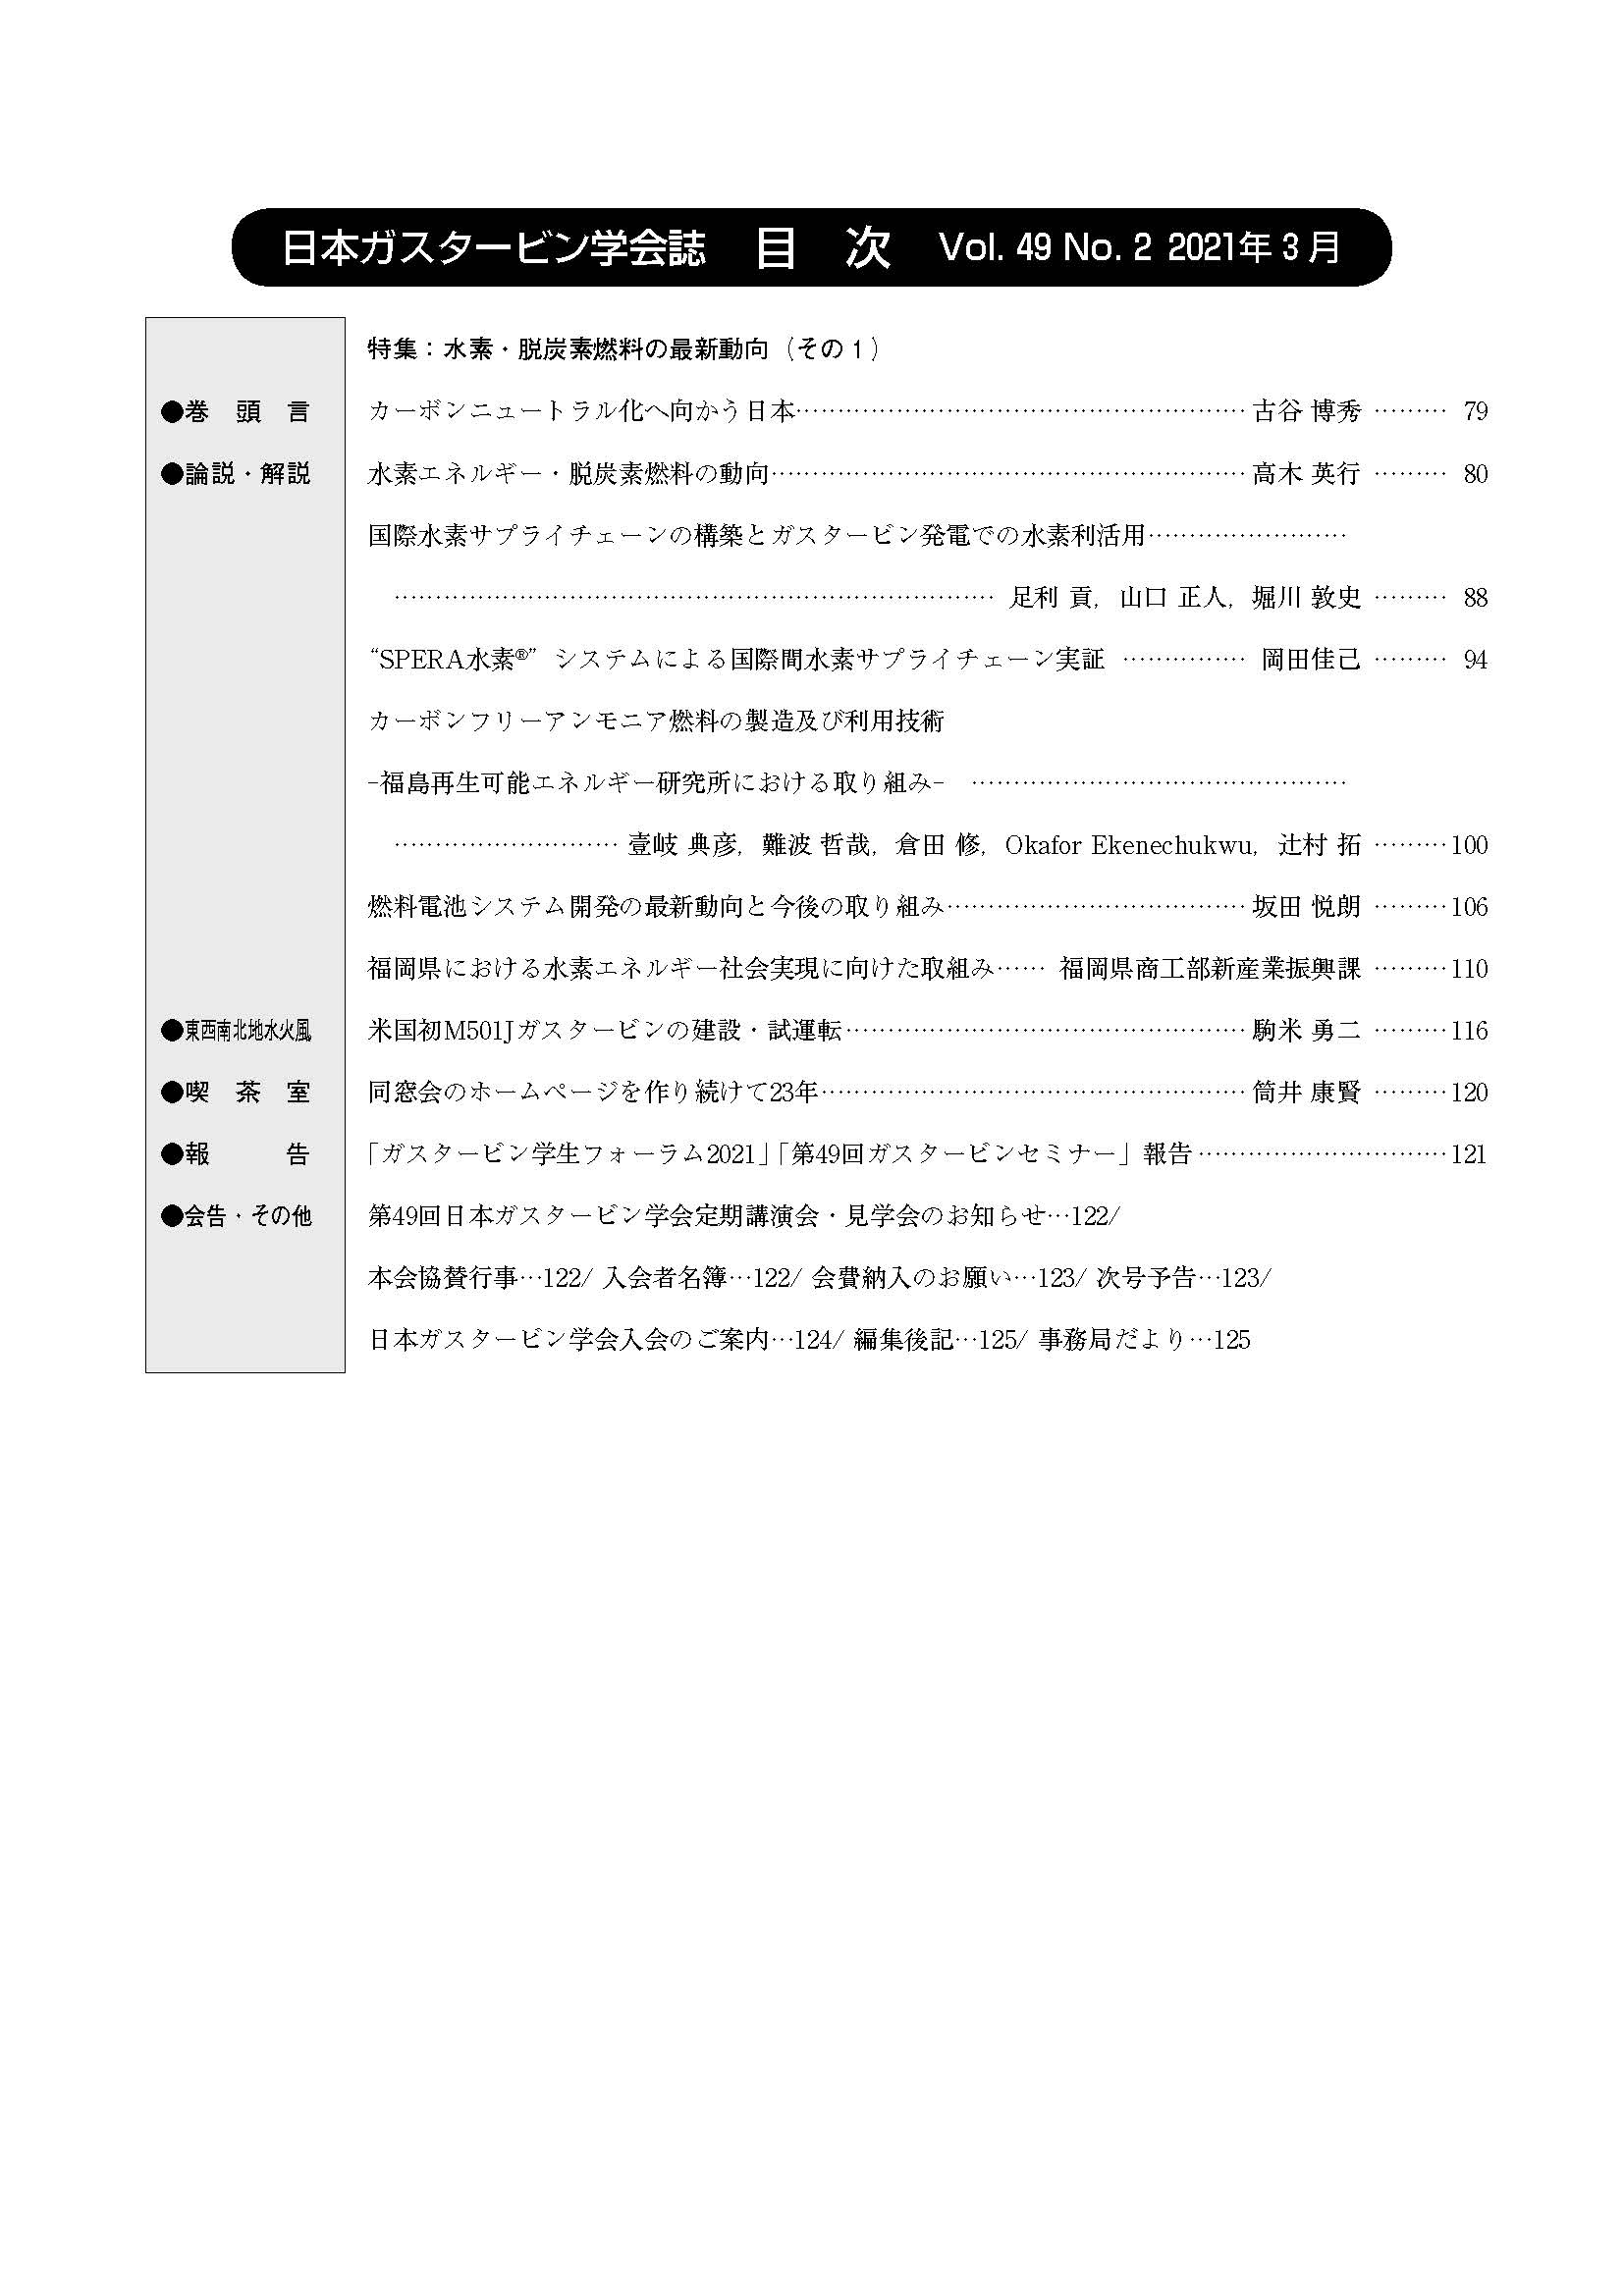 日本ガスタービン学会誌 Vol.49 No.2 2021年3月 目次画像